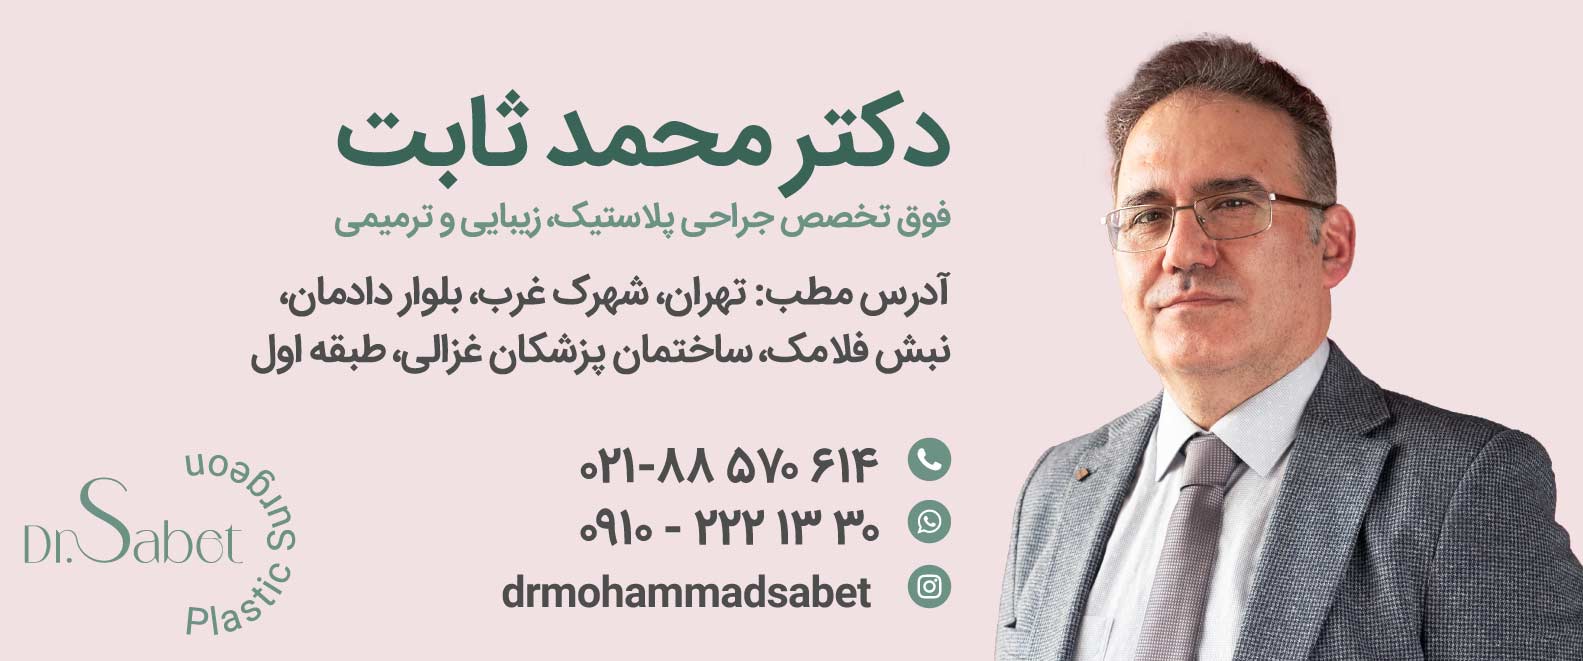 دکتر محمد ثابت | بهترین جراح پلاستیک تهران | هزینه جراحی زیبایی